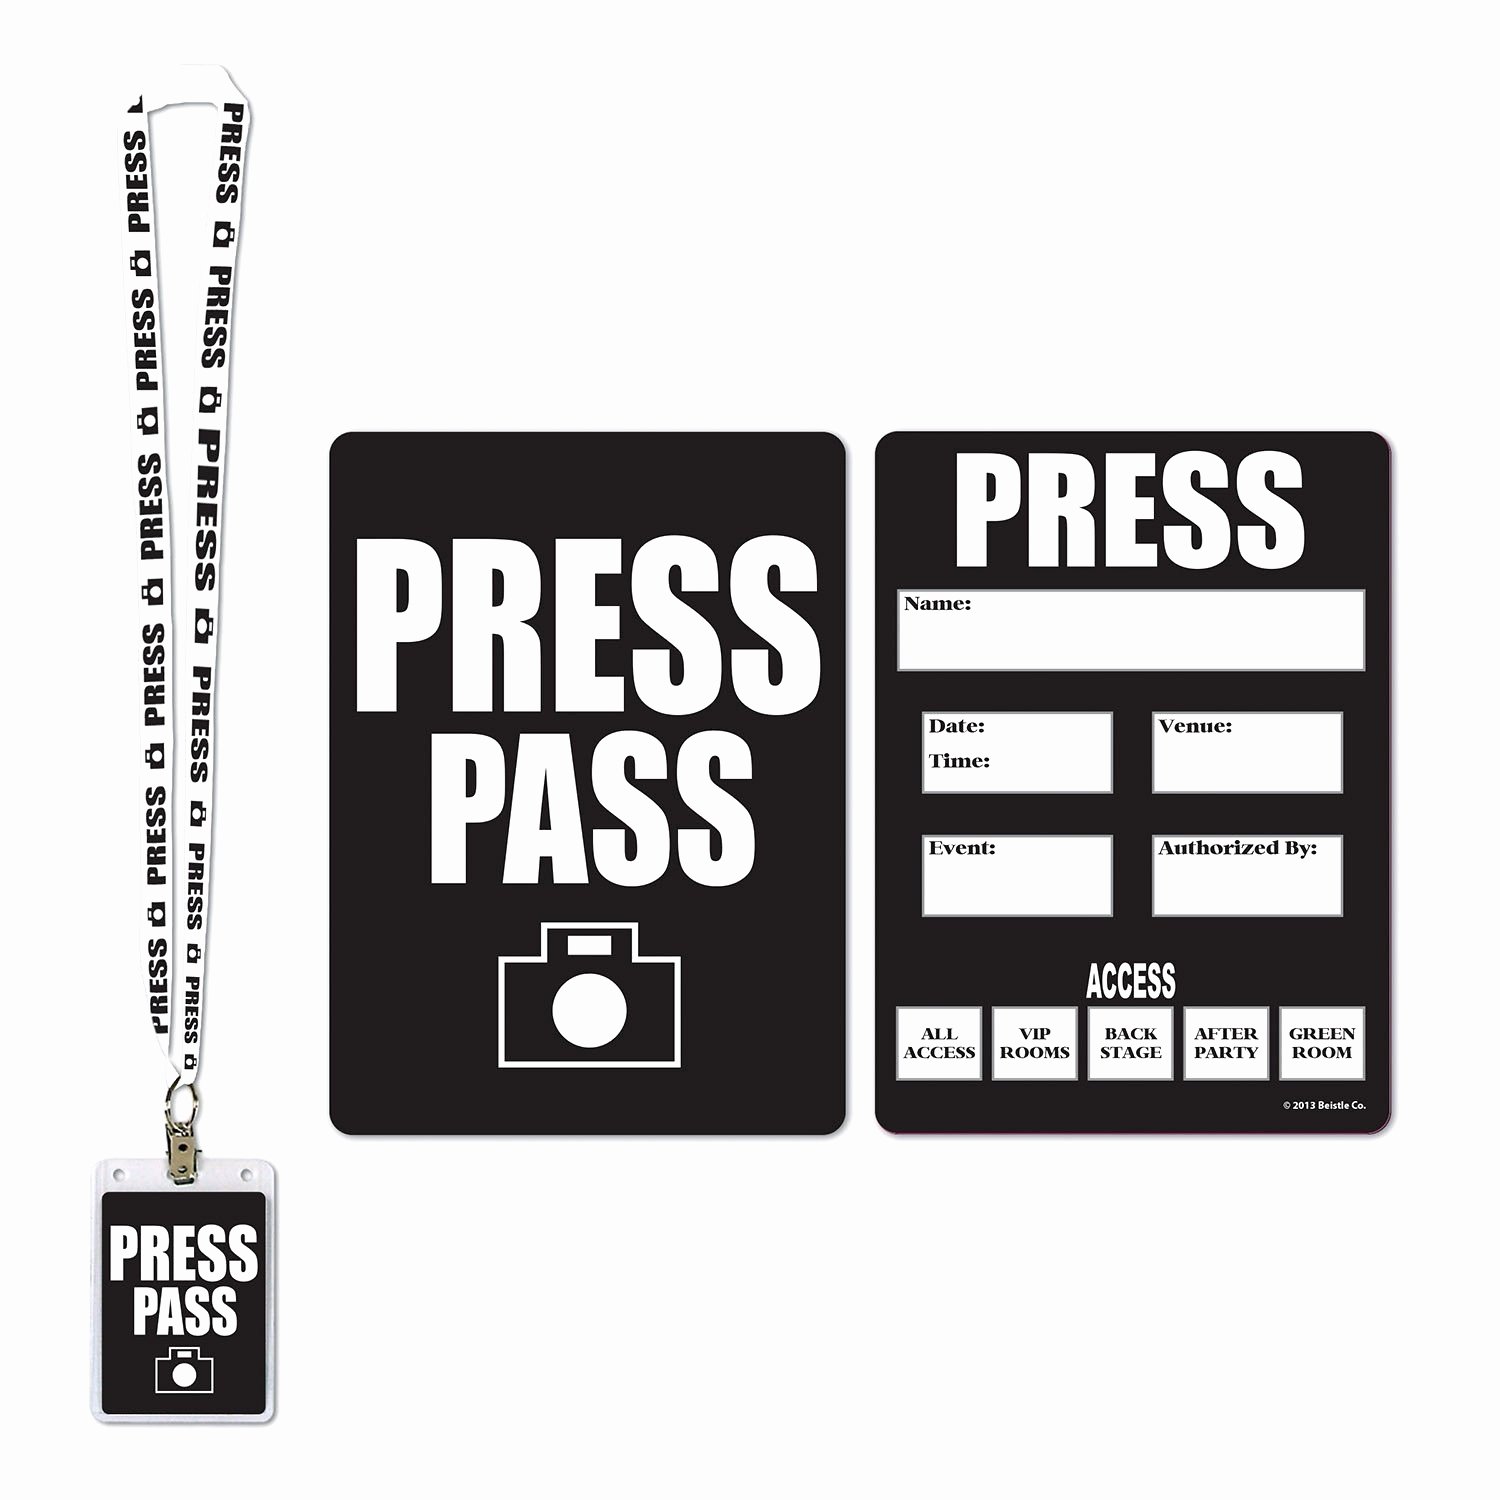 Free Press Pass Template Unique Lois Lane Press Pass Template Inspirational Press Passes